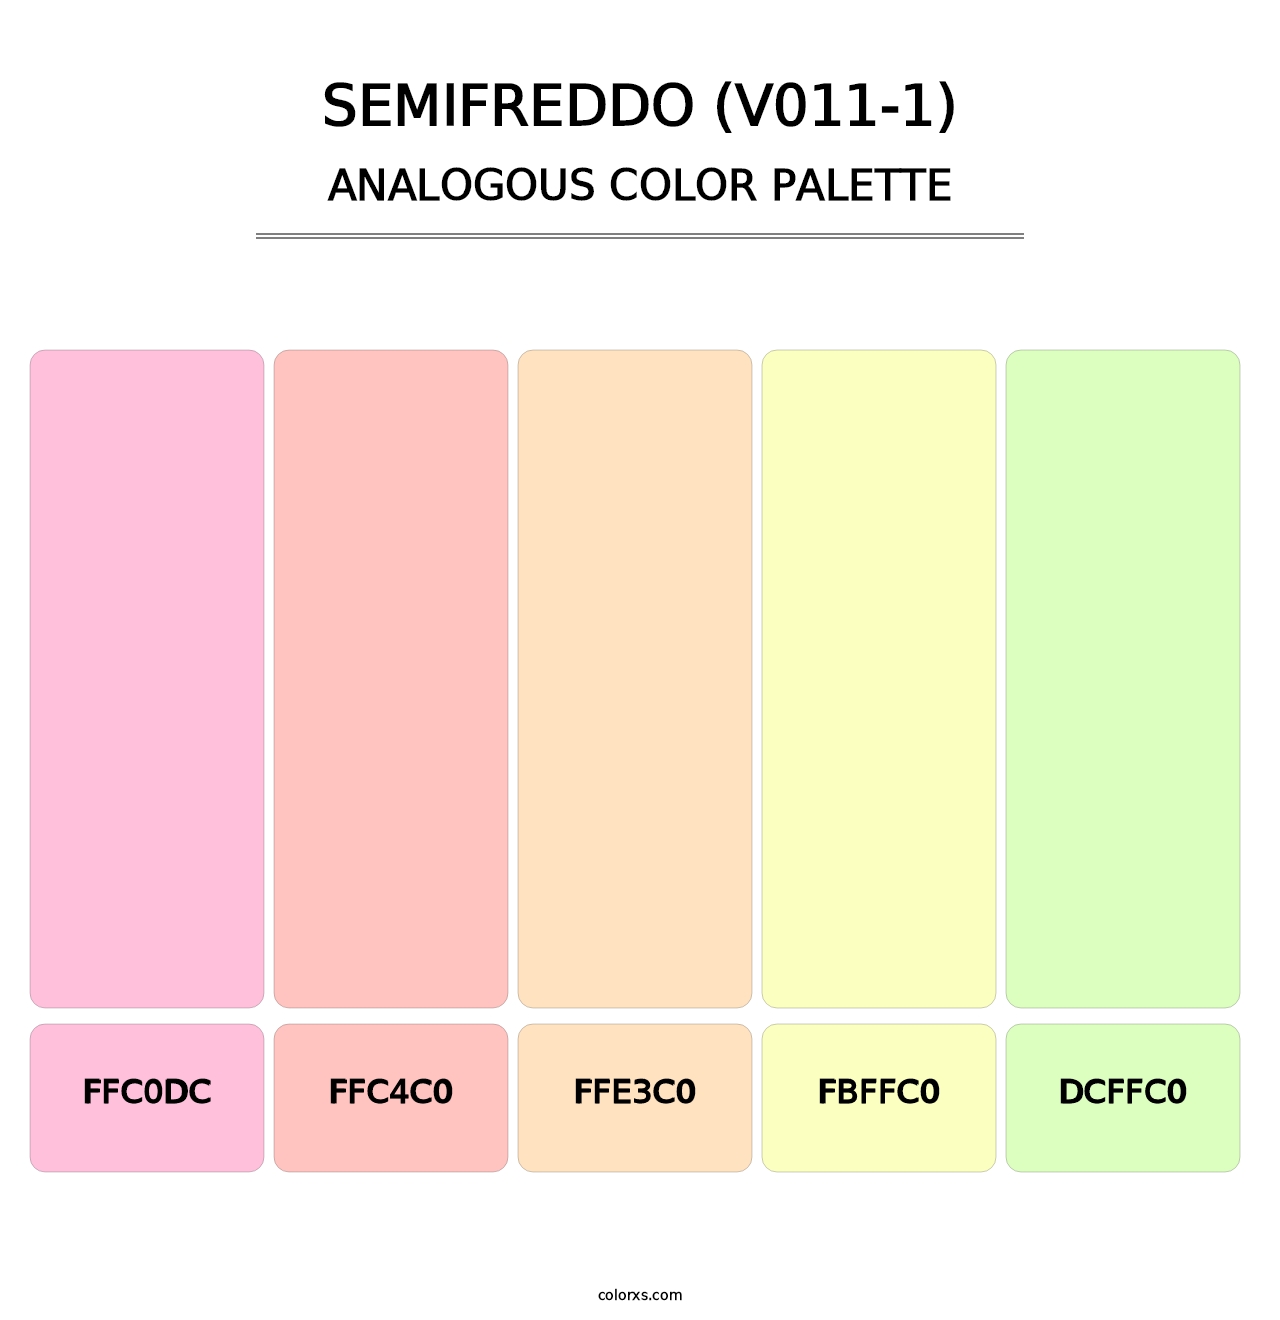 Semifreddo (V011-1) - Analogous Color Palette